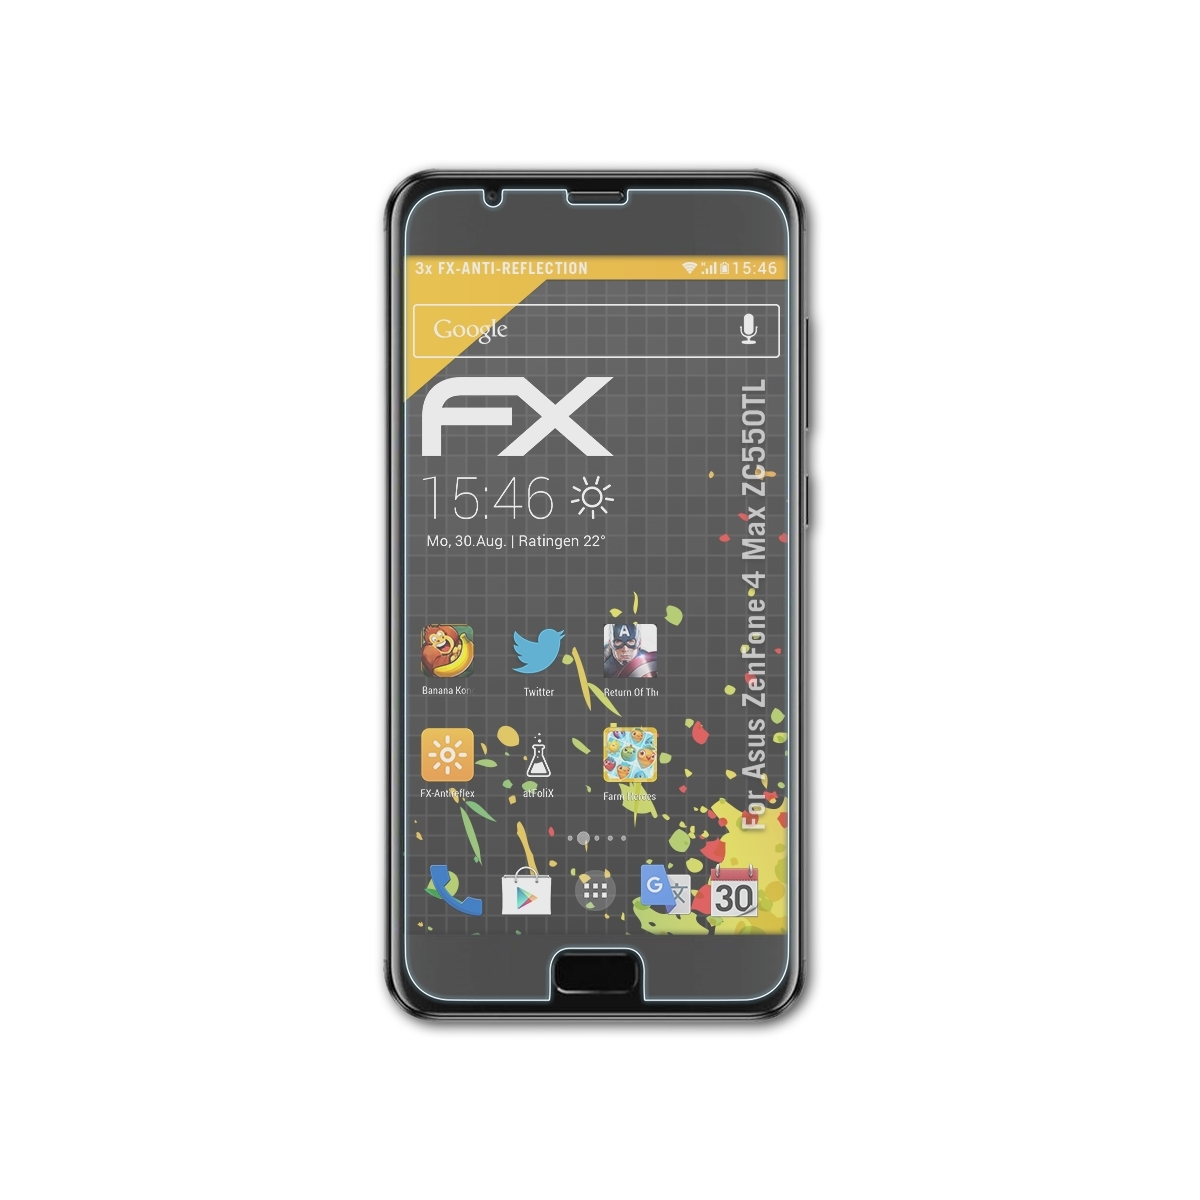 ATFOLIX 3x FX-Antireflex Displayschutz(für 4 Asus Max (ZC550TL)) ZenFone